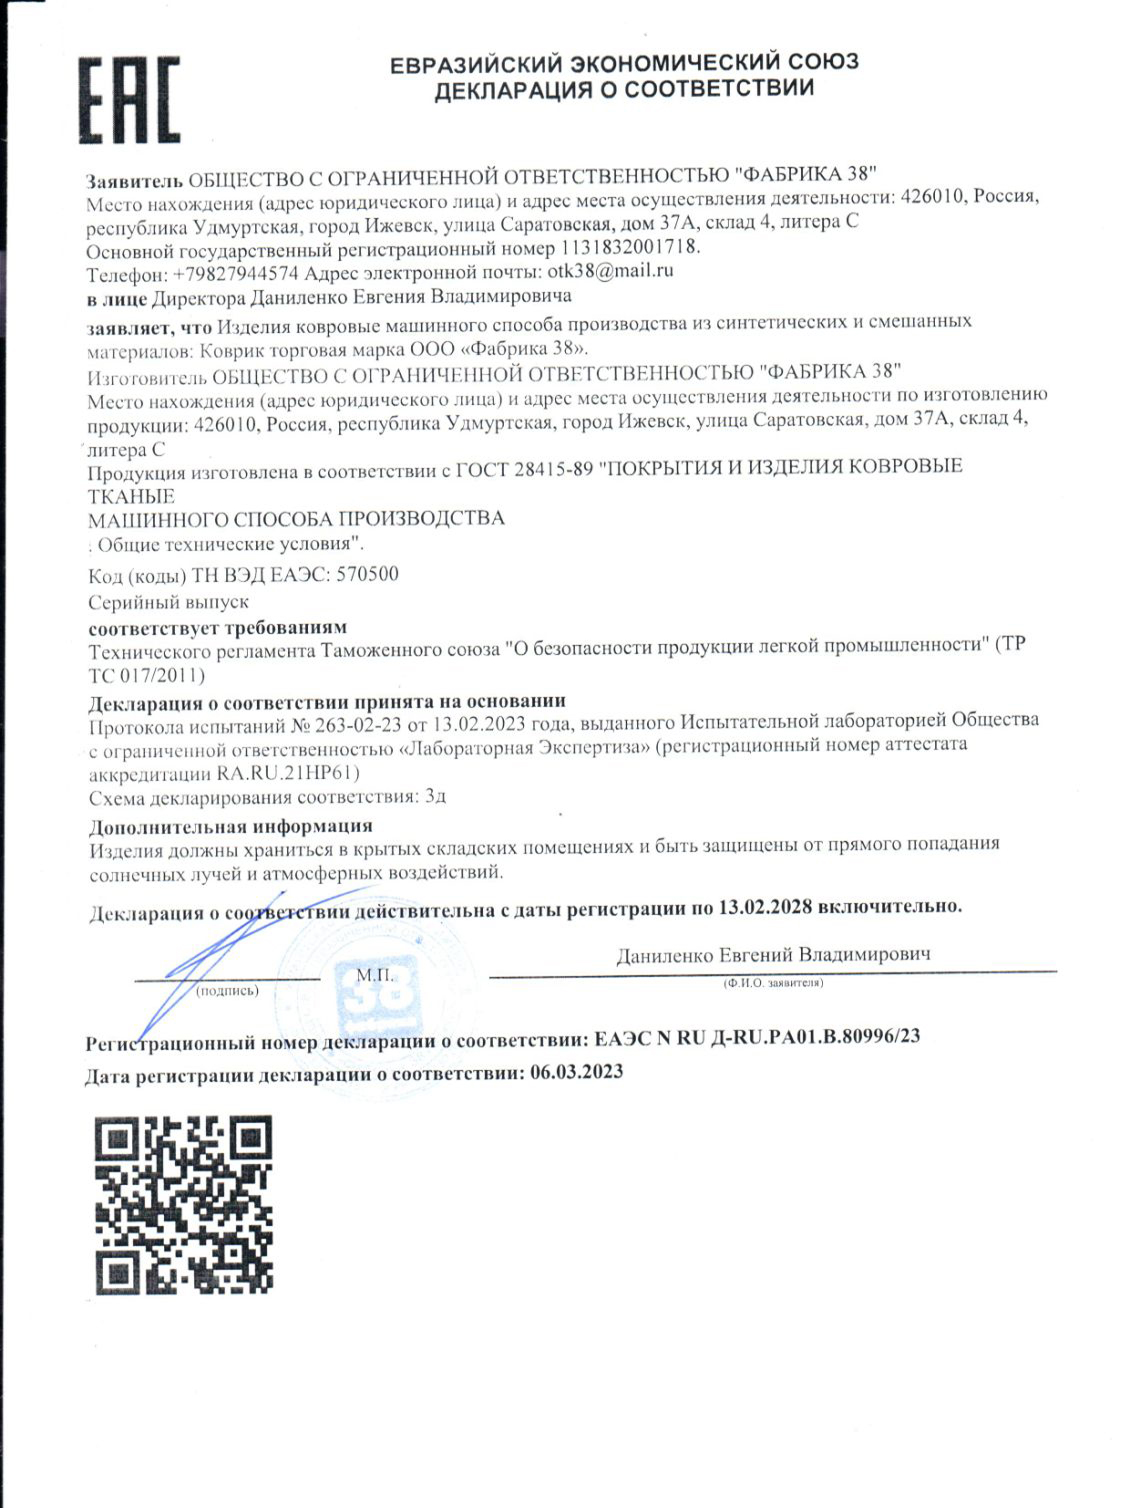 сертификат ЕЭС 2